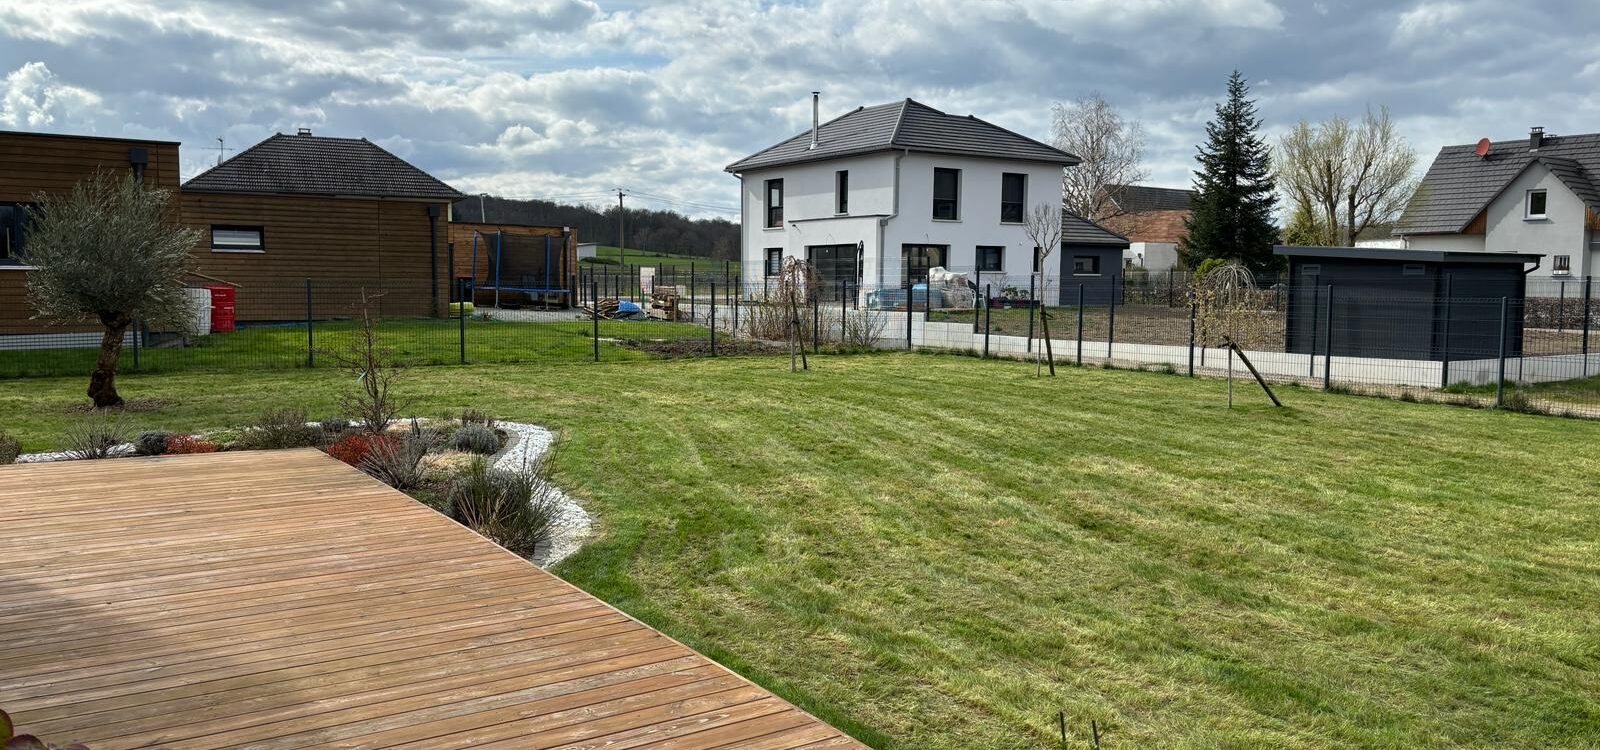 Une pelouse impeccable grâce à la scarification              avec CG Concept Paysage à Aspach. Colmar